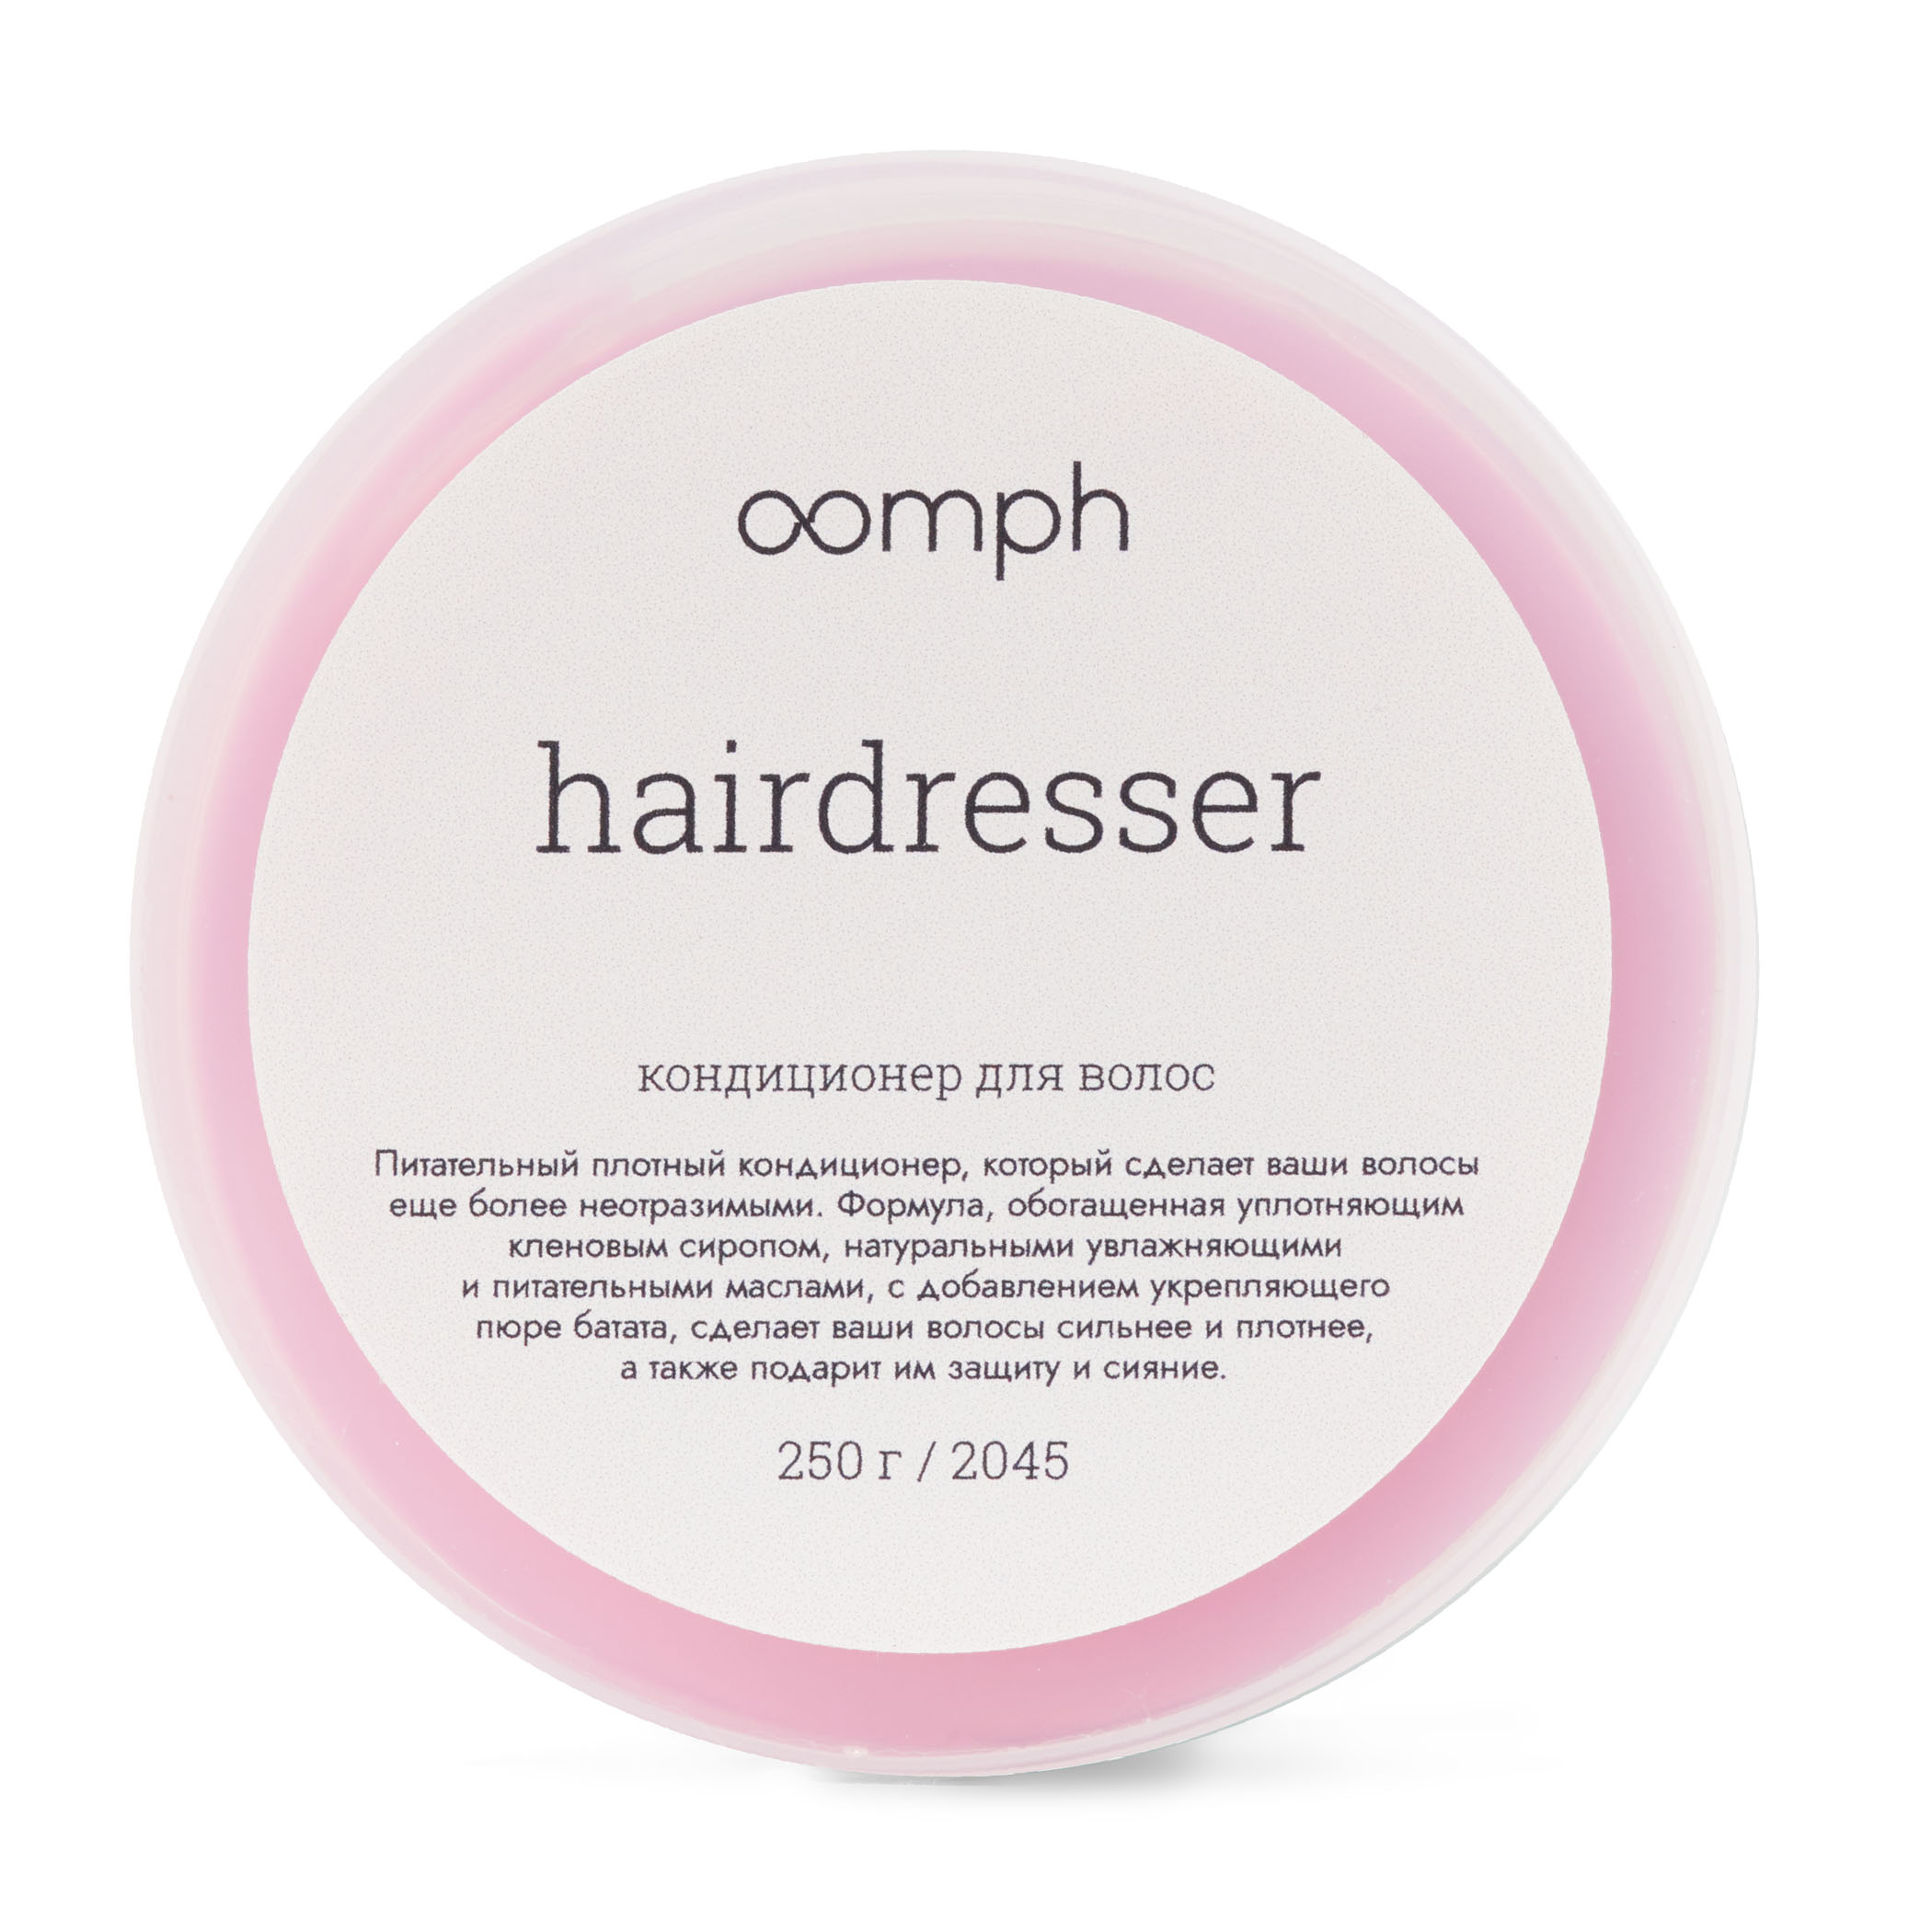 Кондиционер для волос Oomph Hairdresser 250г